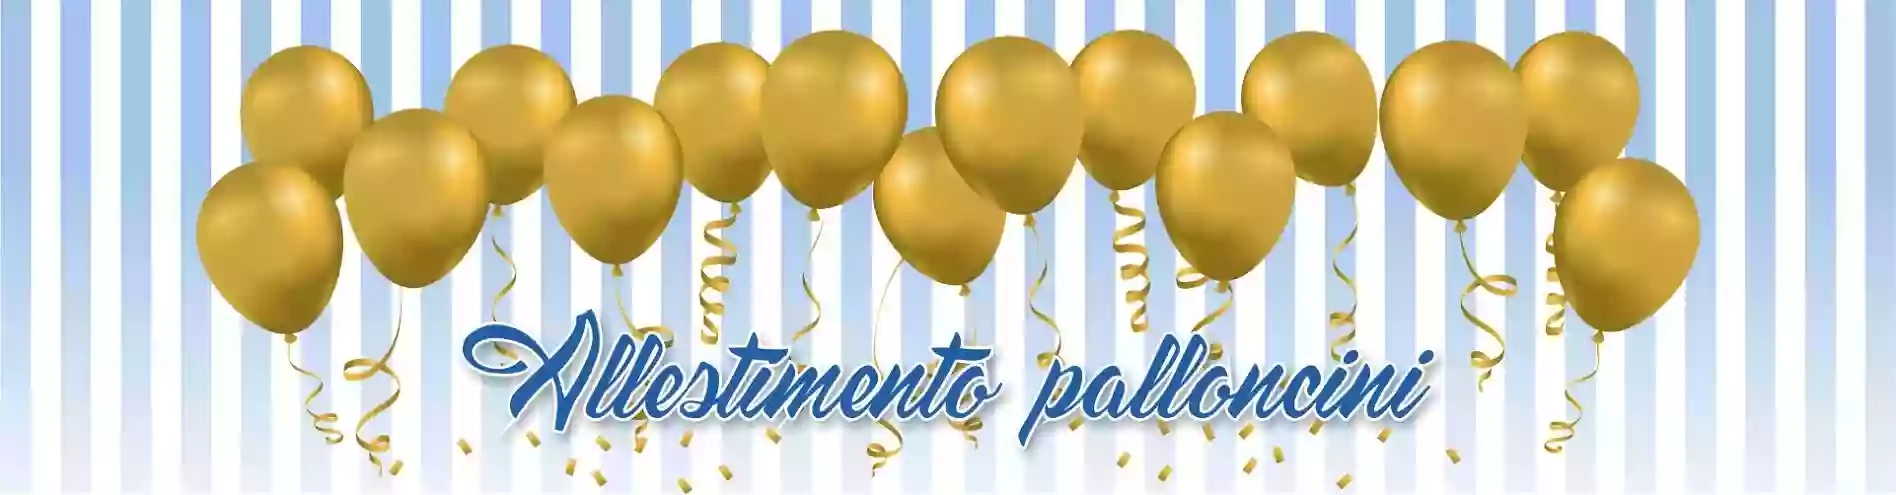 LE FESTE DI BOMBO - Allestimento palloncini, Feste ed Eventi